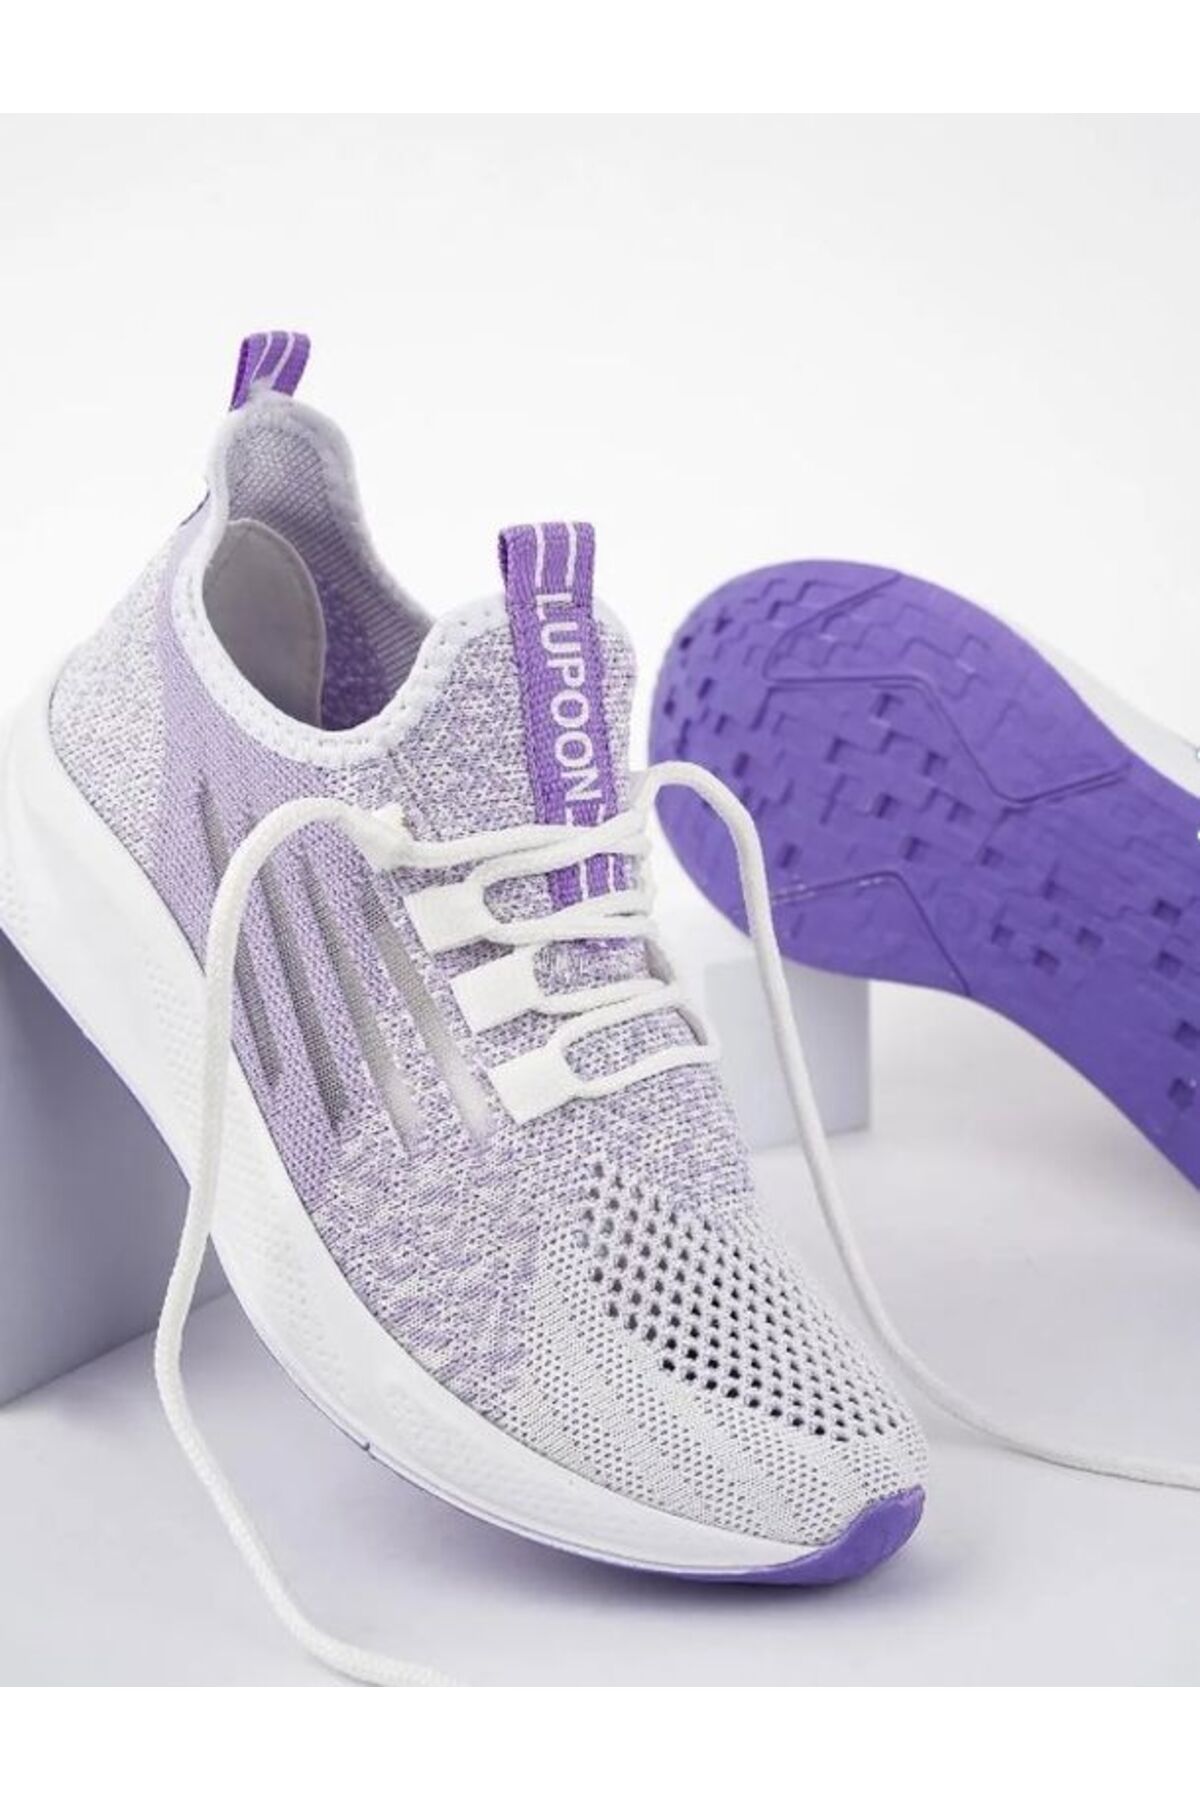 Yazlık Kadın Ortopedik Günlük Garantili Yürüyüş Koşu Sneaker Spor Ayakkabı